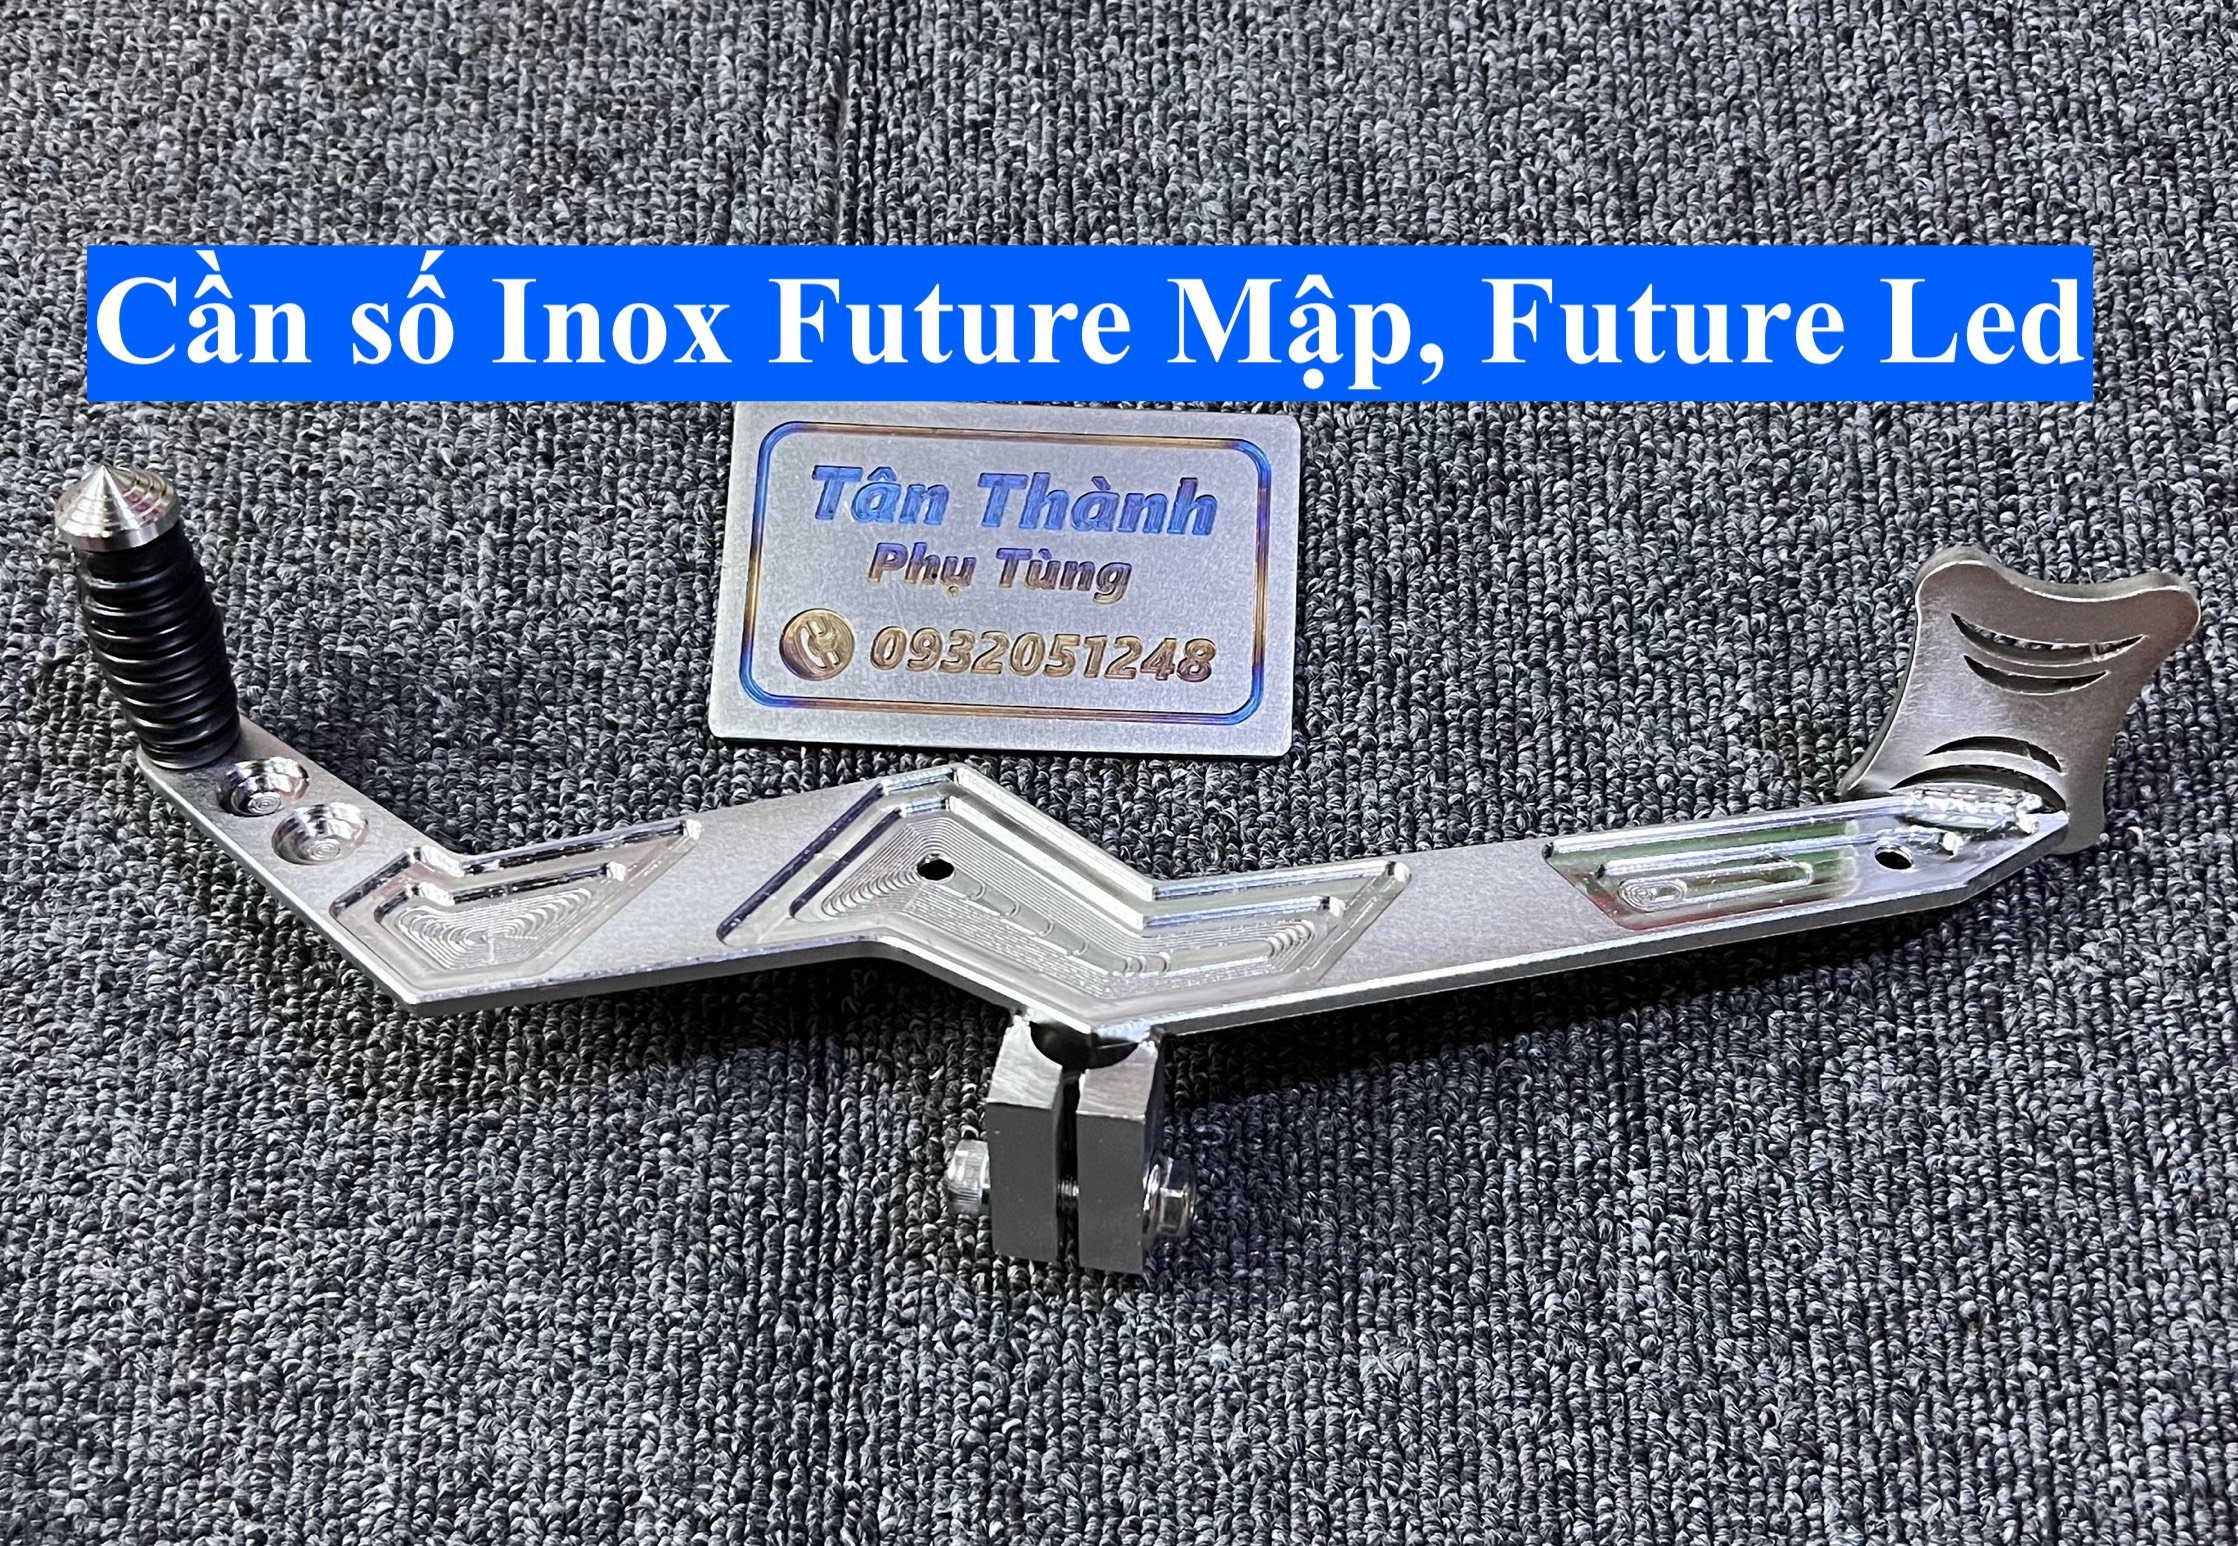 Cần số Inox 304 dành cho Future Mập, Future Led ( MS2)